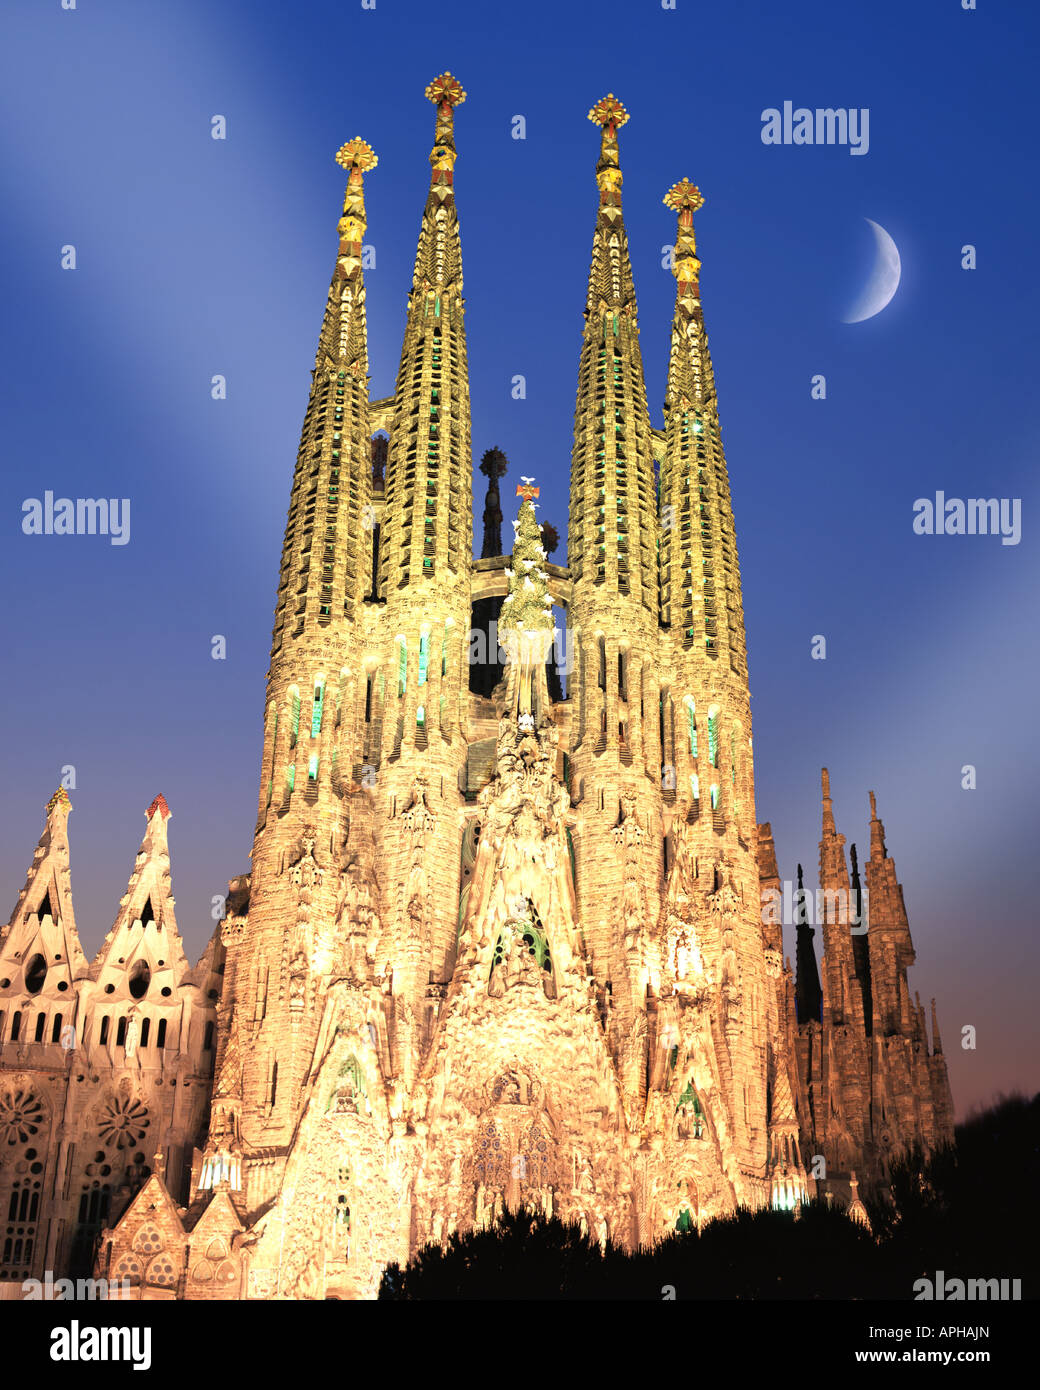 ES - BARCELONA: El Templo de la Sagrada Familia por la noche Foto de stock